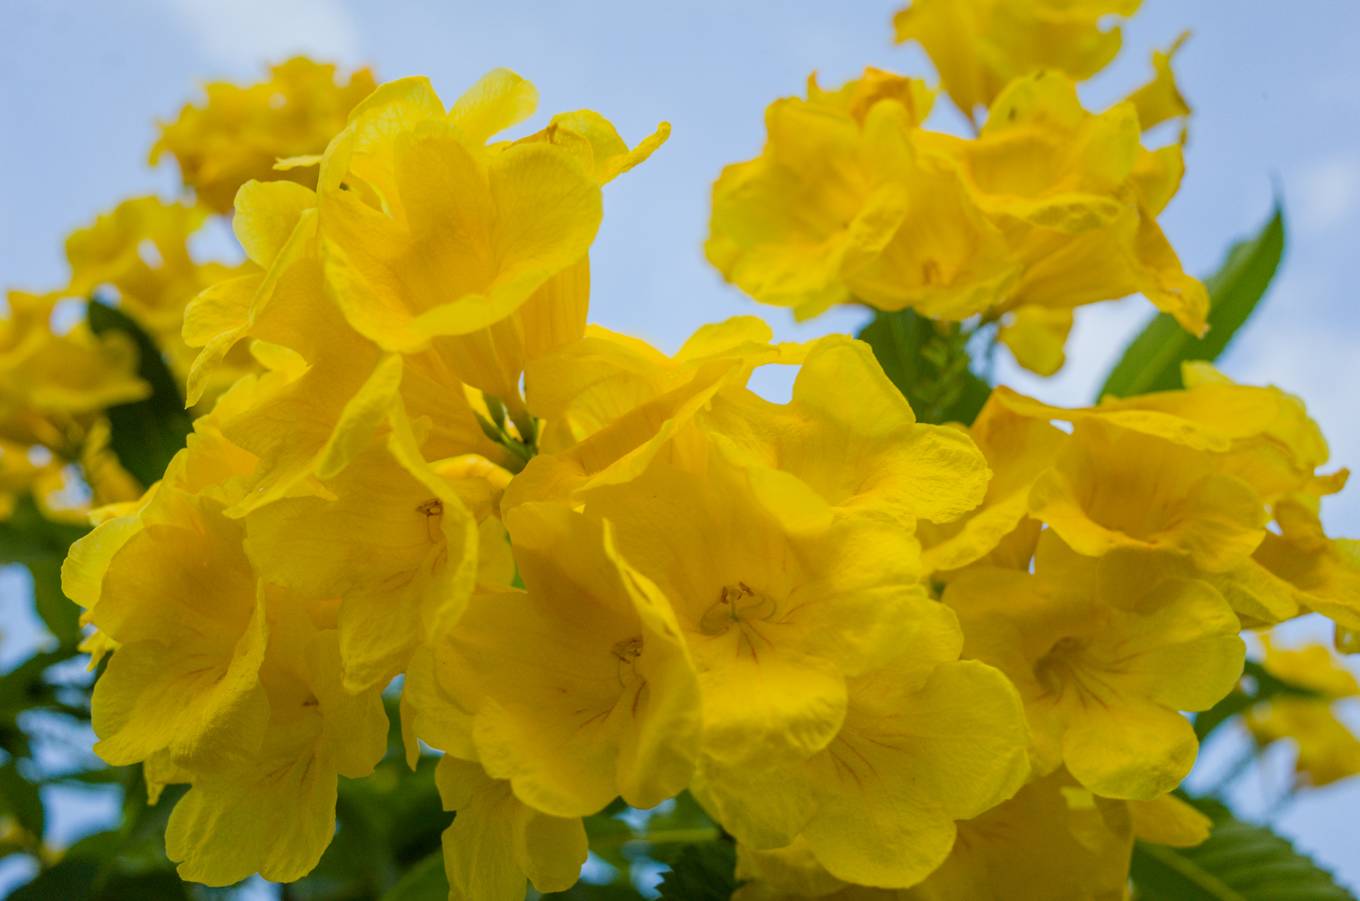 Hoa còn có tên gọi khác là sò đo bông vàng. Mỗi khi cây nở hoa, nó trở thành tâm điểm thu hút những ánh nhìn bởi màu sắc rực rỡ